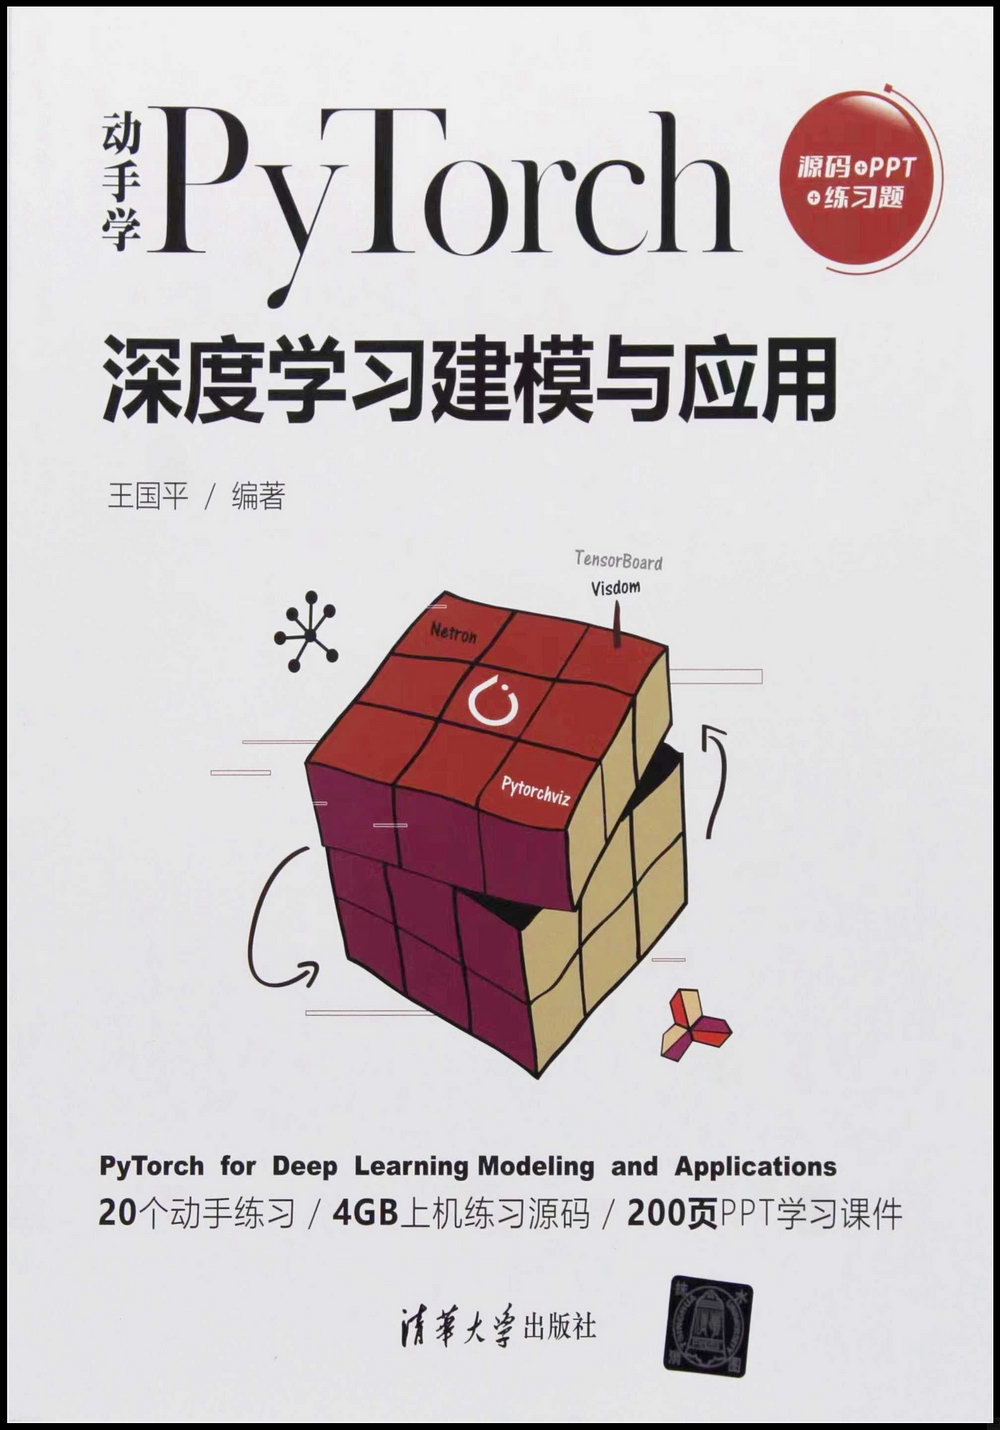 動手學PyTorch深度學習建模與應用